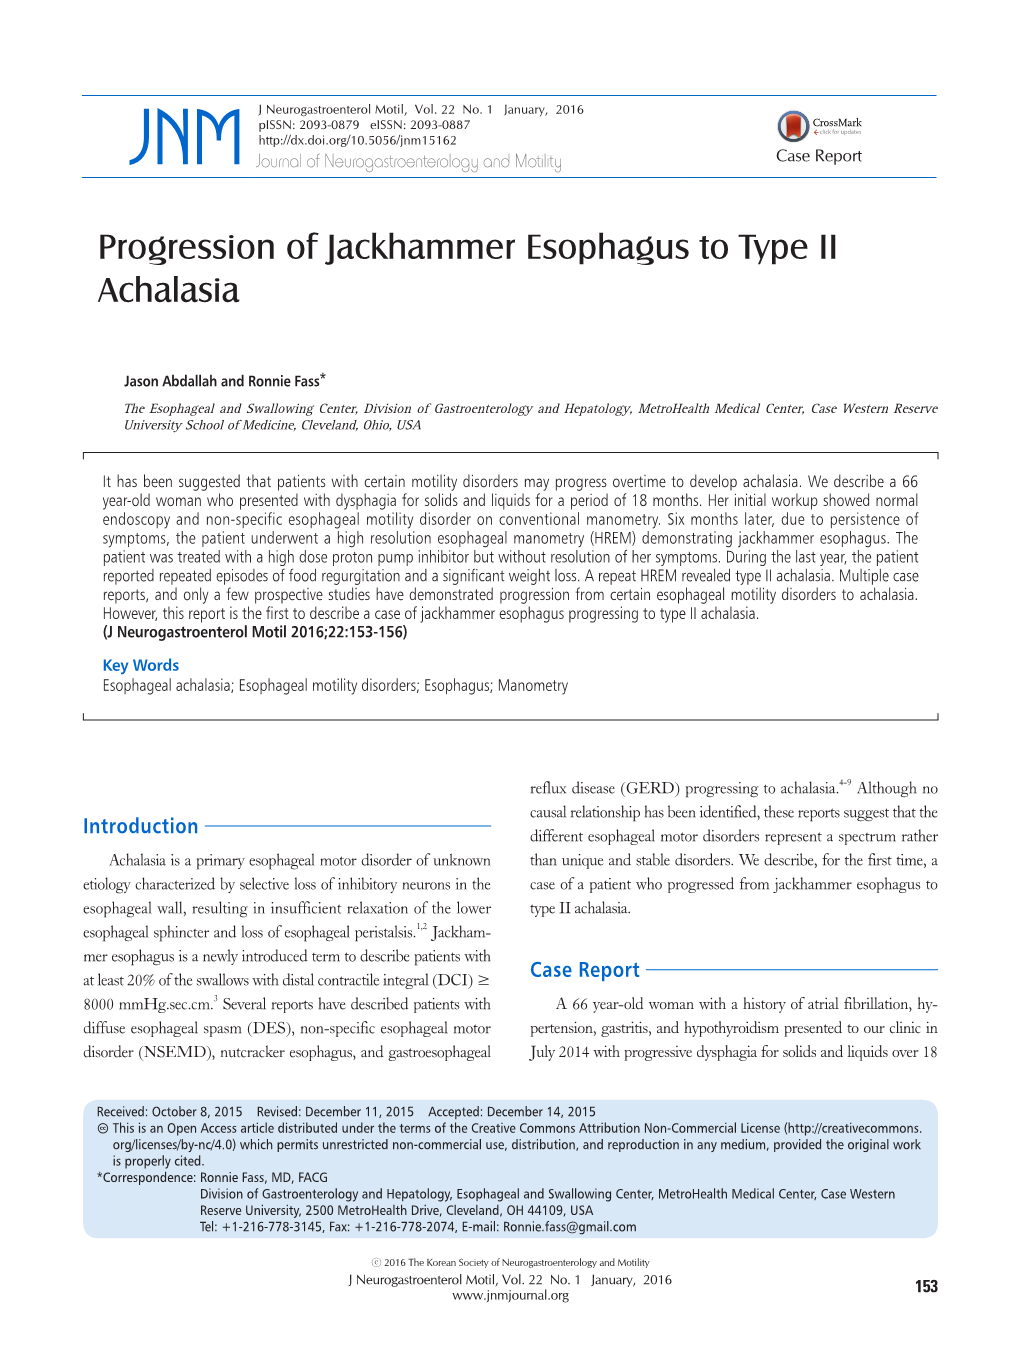 Progression of Jackhammer Esophagus to Type II Achalasia